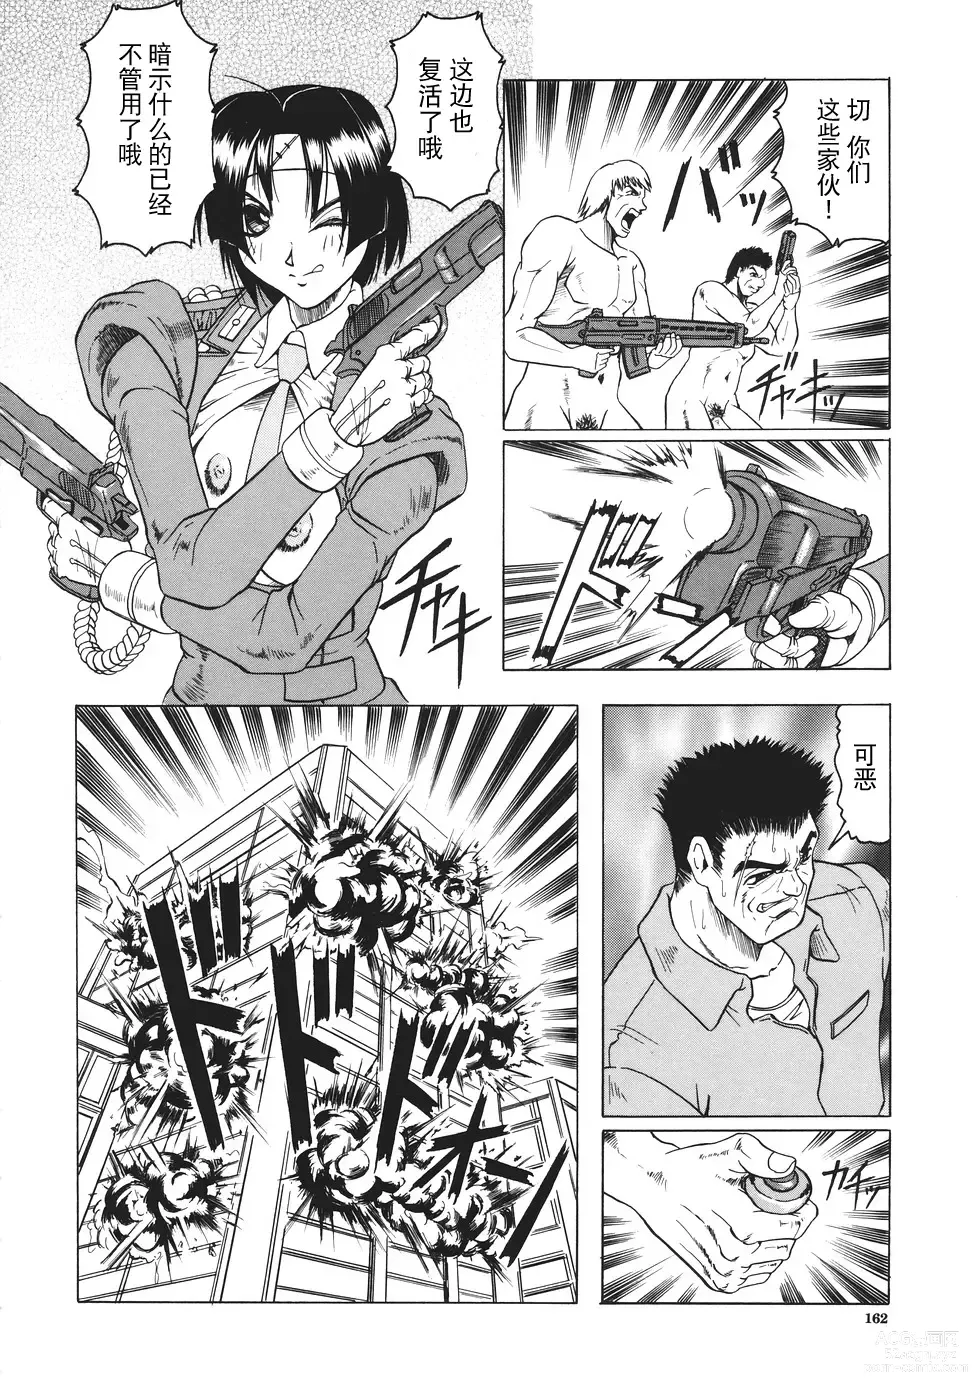 Page 163 of manga Kamyla